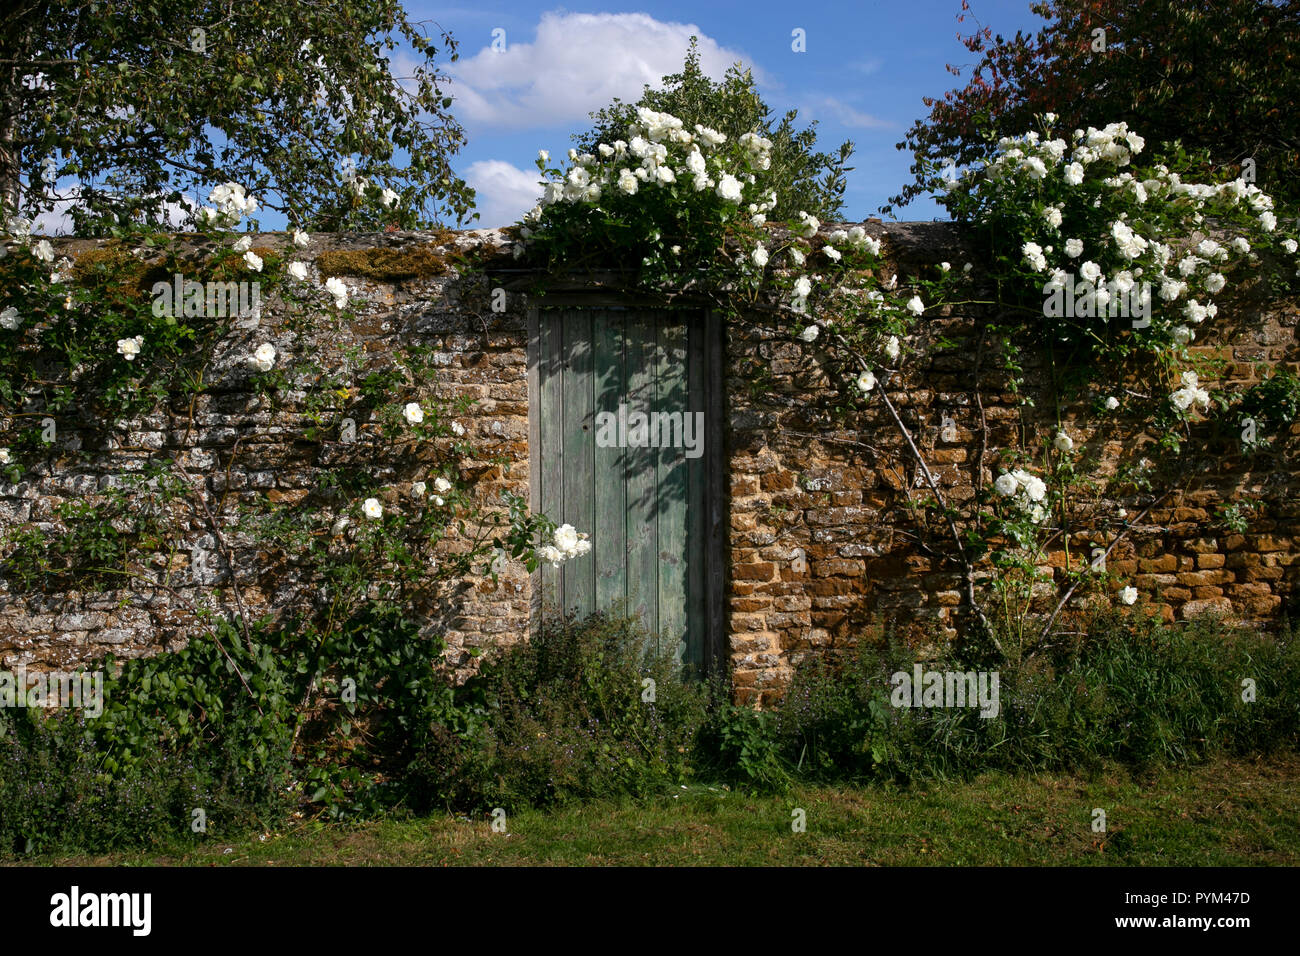 Escalade en bois blanc rose autour de la porte et mur de brique de jardin anglais,Angleterre,Europe Banque D'Images